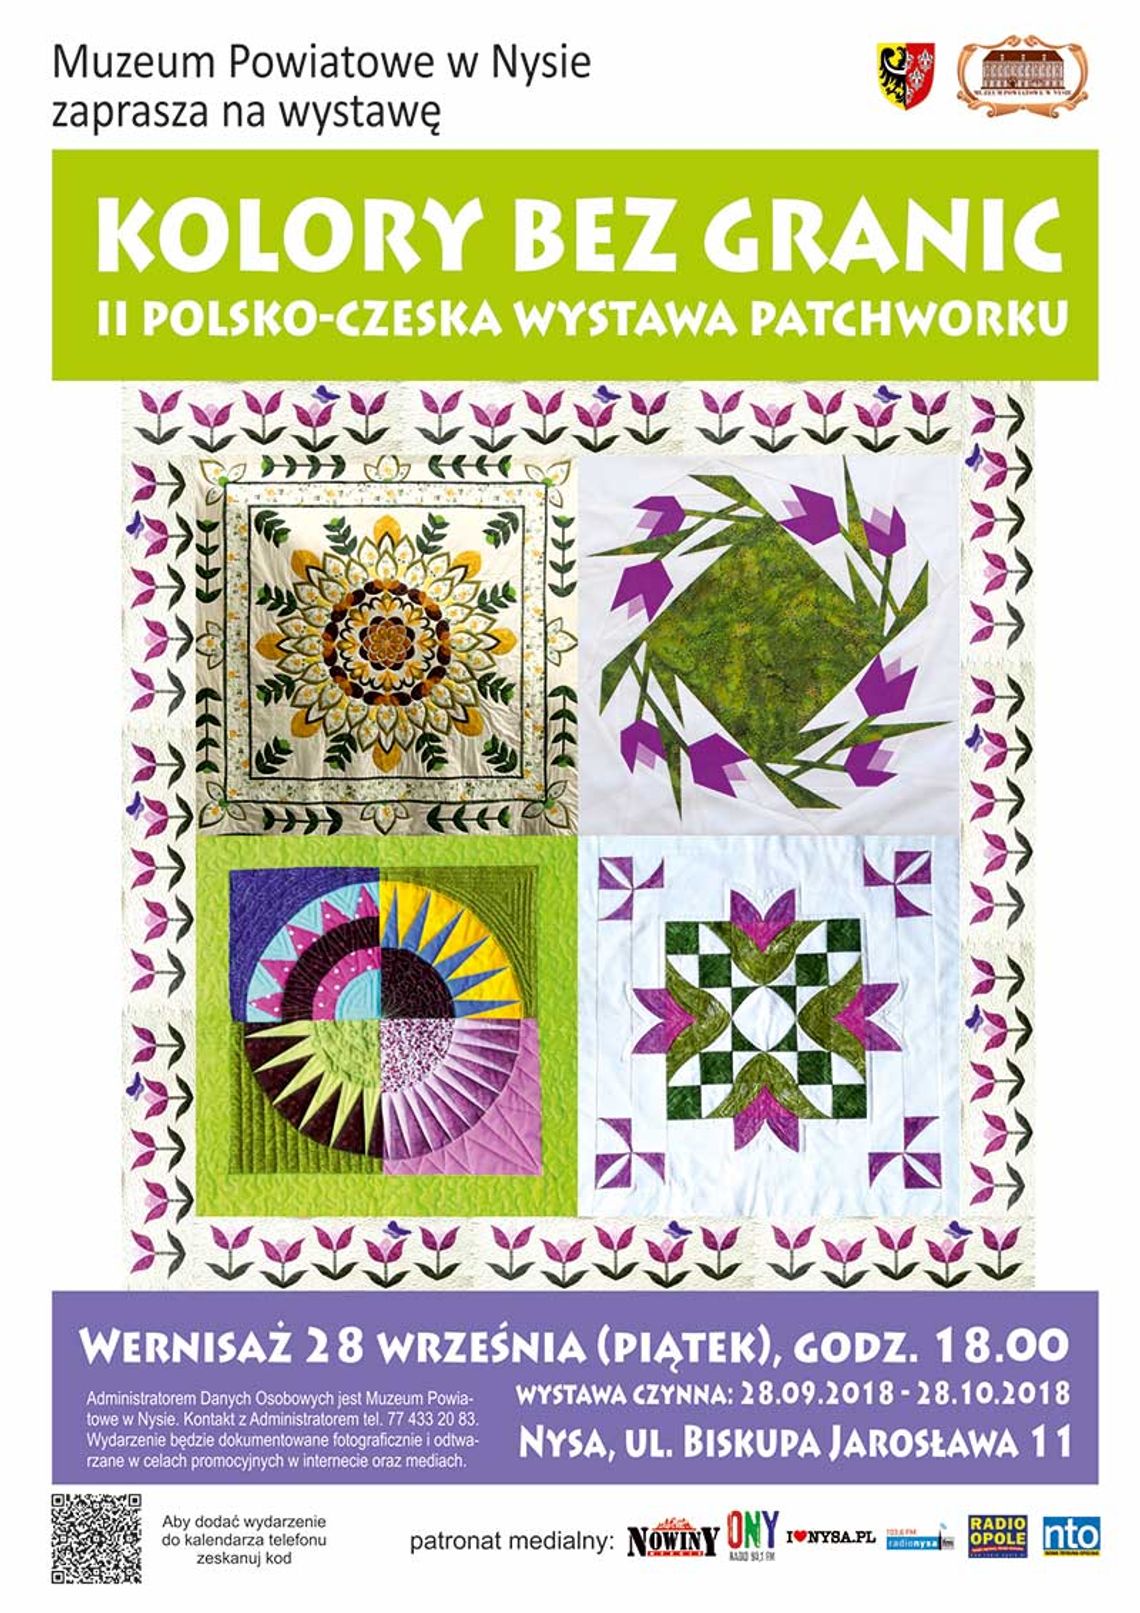 Wernisaż wystawy „KOLORY BEZ GRANIC - II polsko-czeska wystawa patchworku” (plakat w zał.)